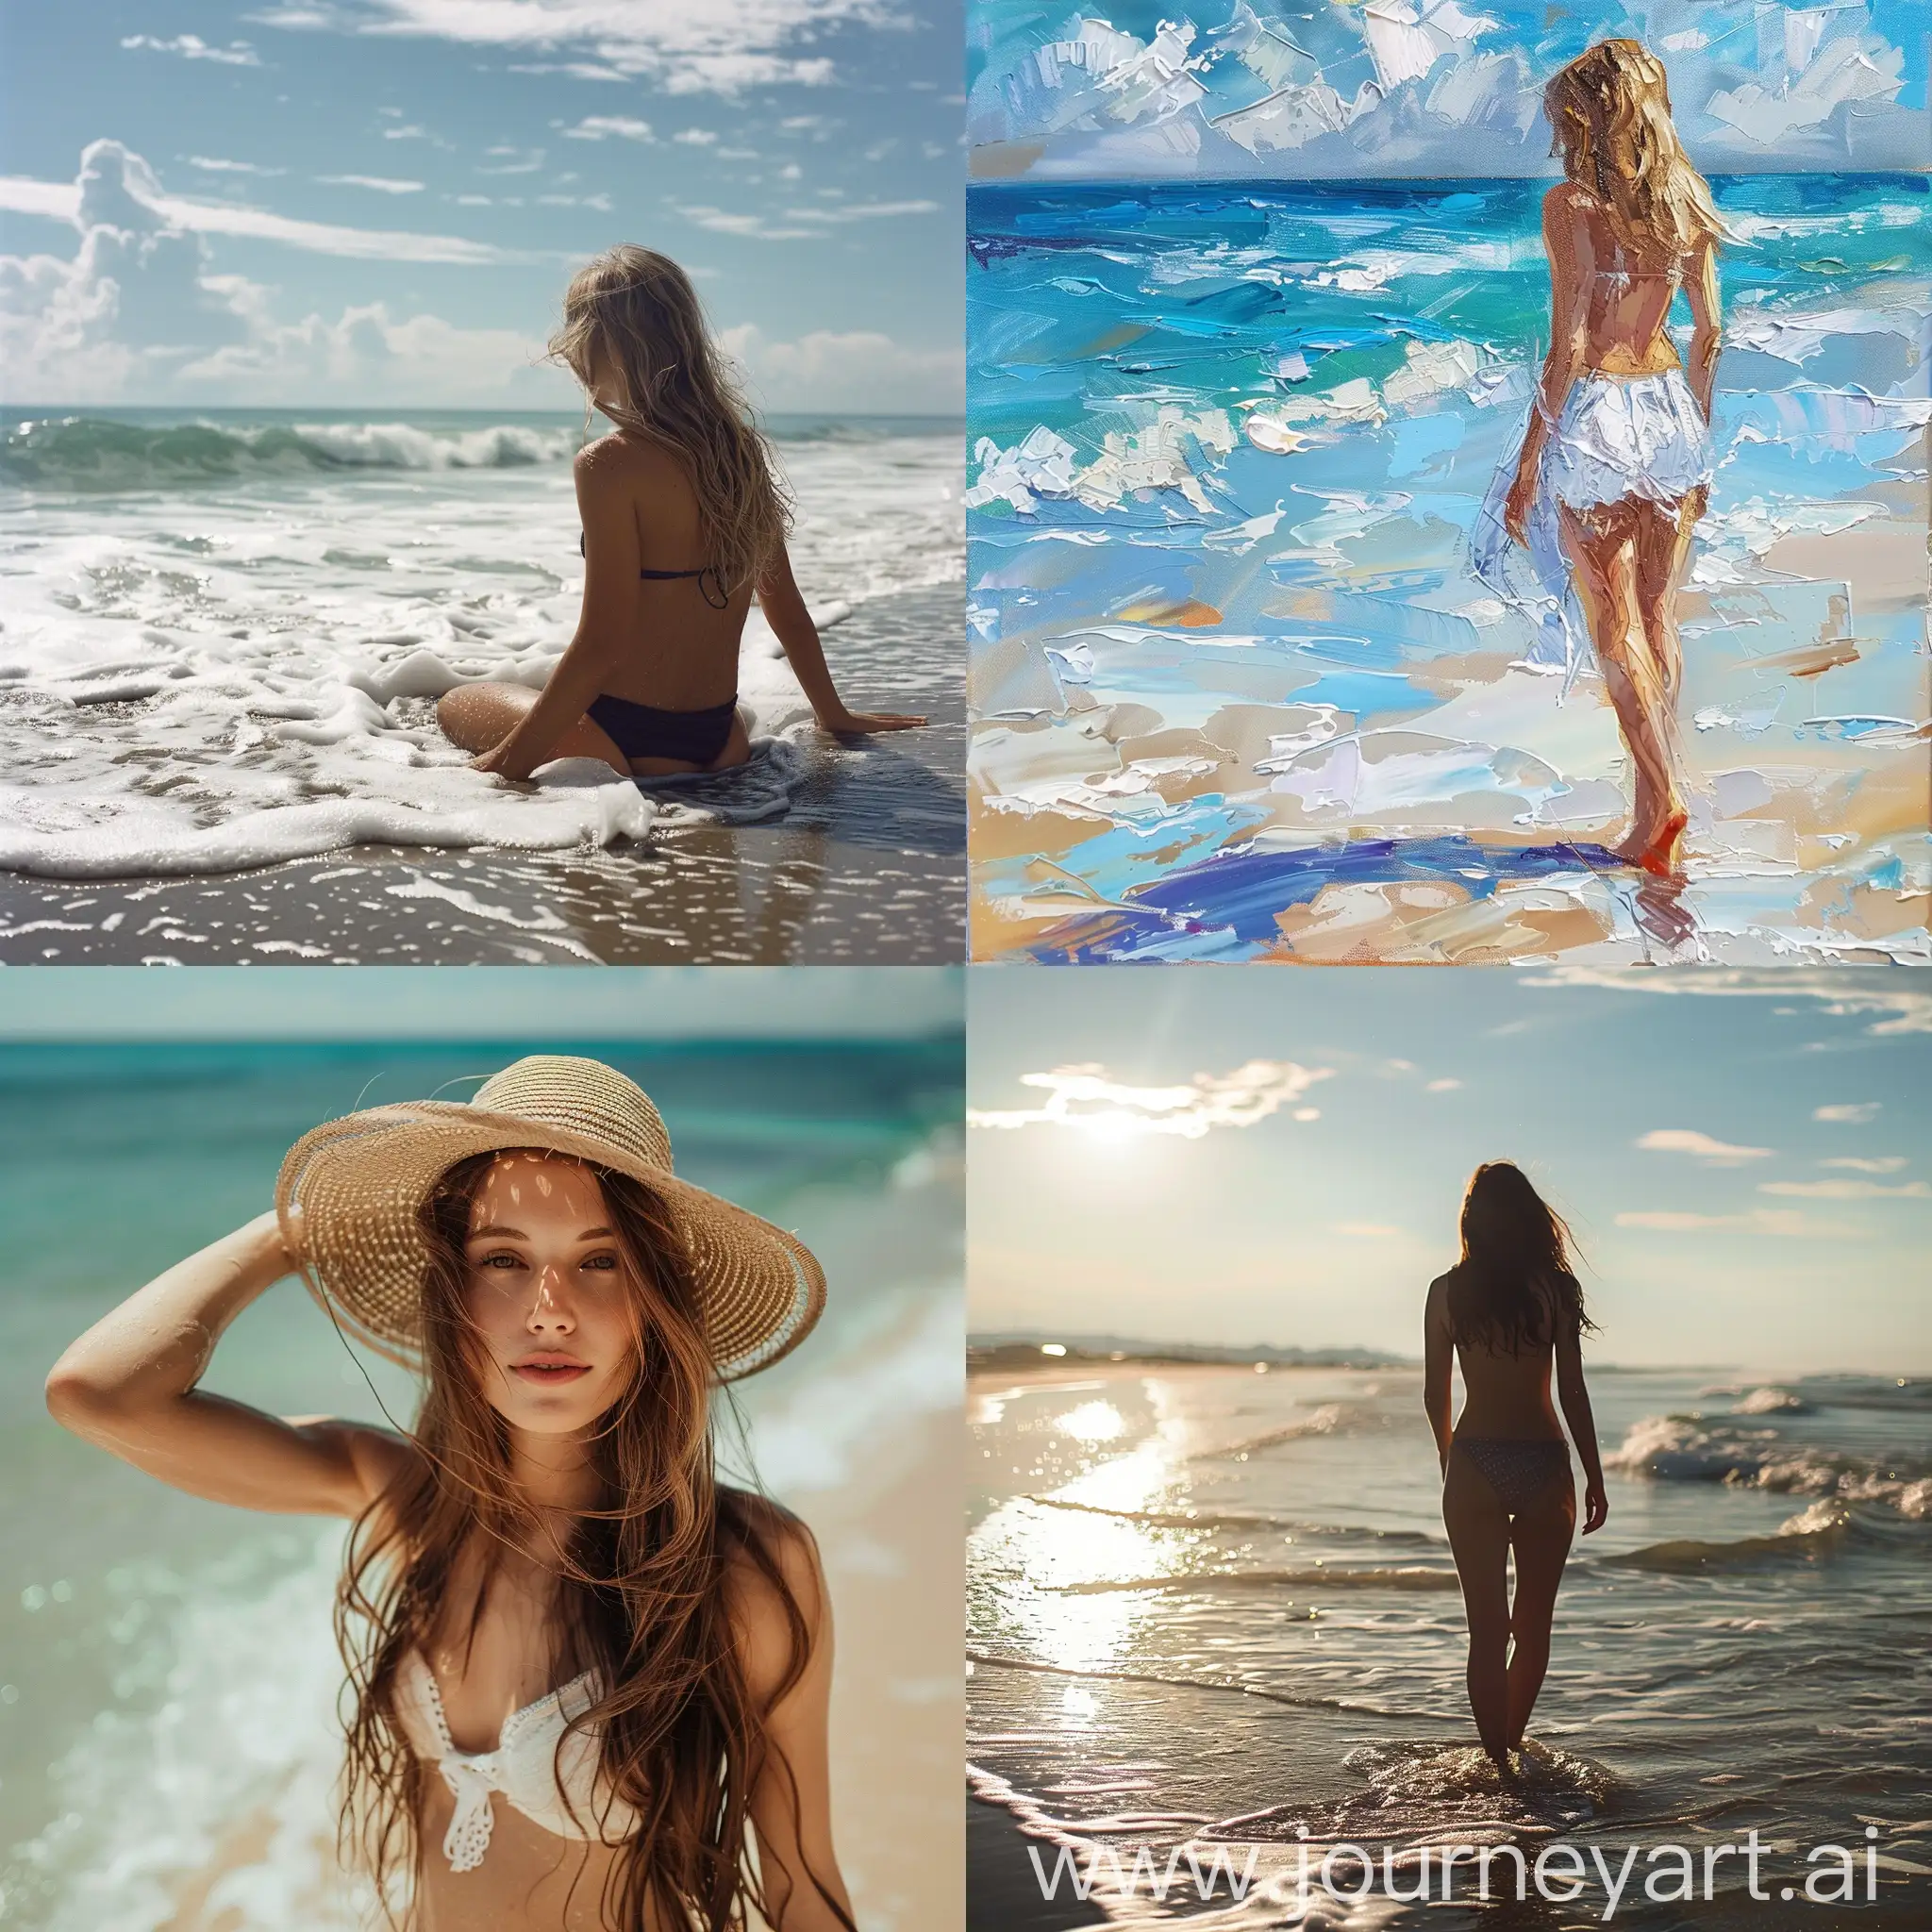 girl in beach